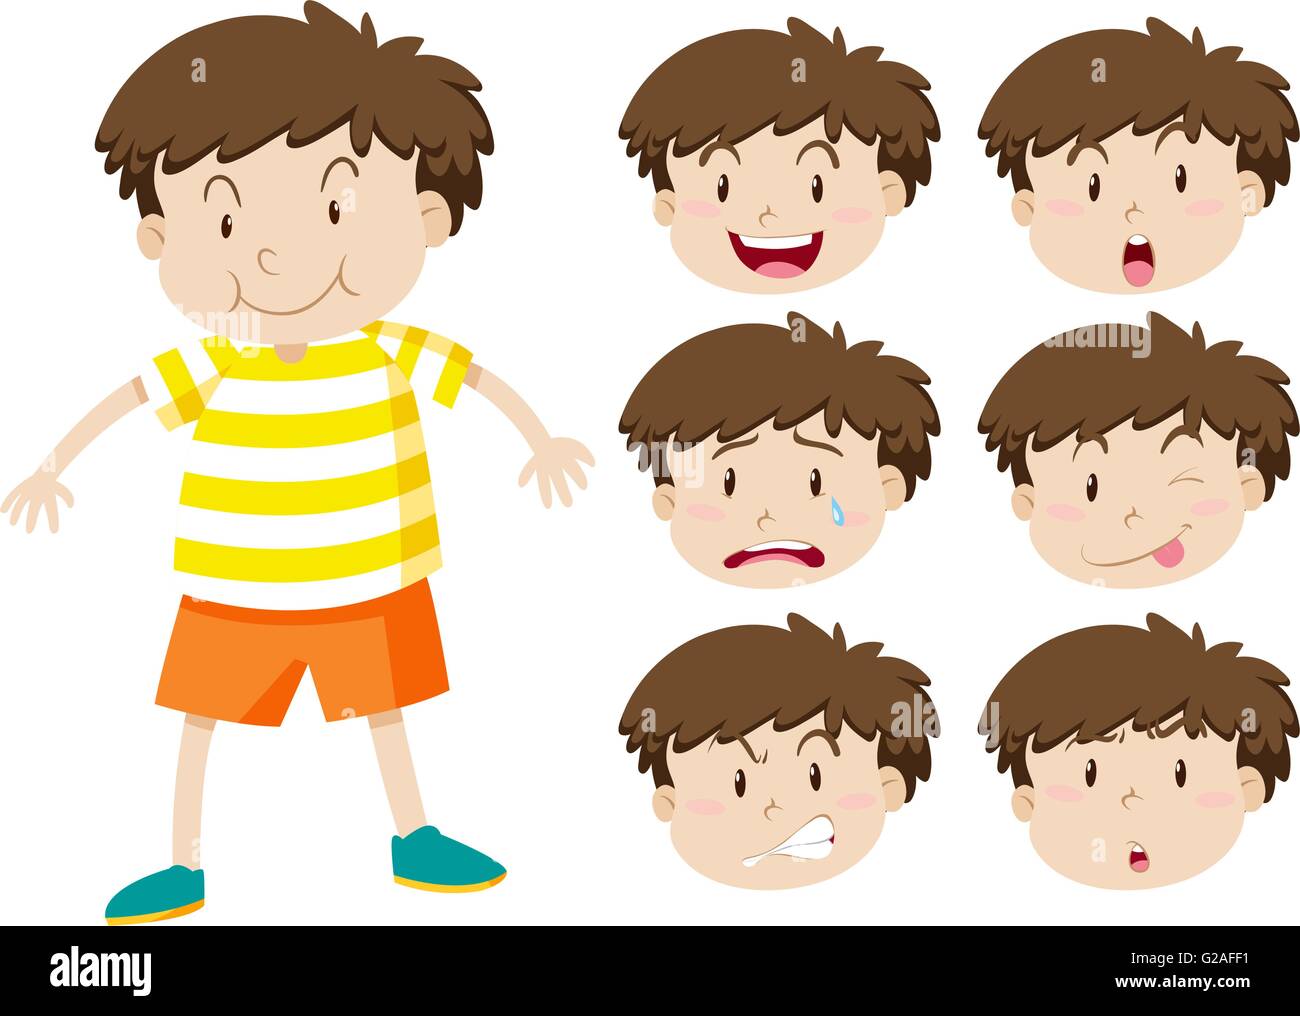 Kleiner Junge mit vielen Gesichtsausdrücken illustration Stock Vektor